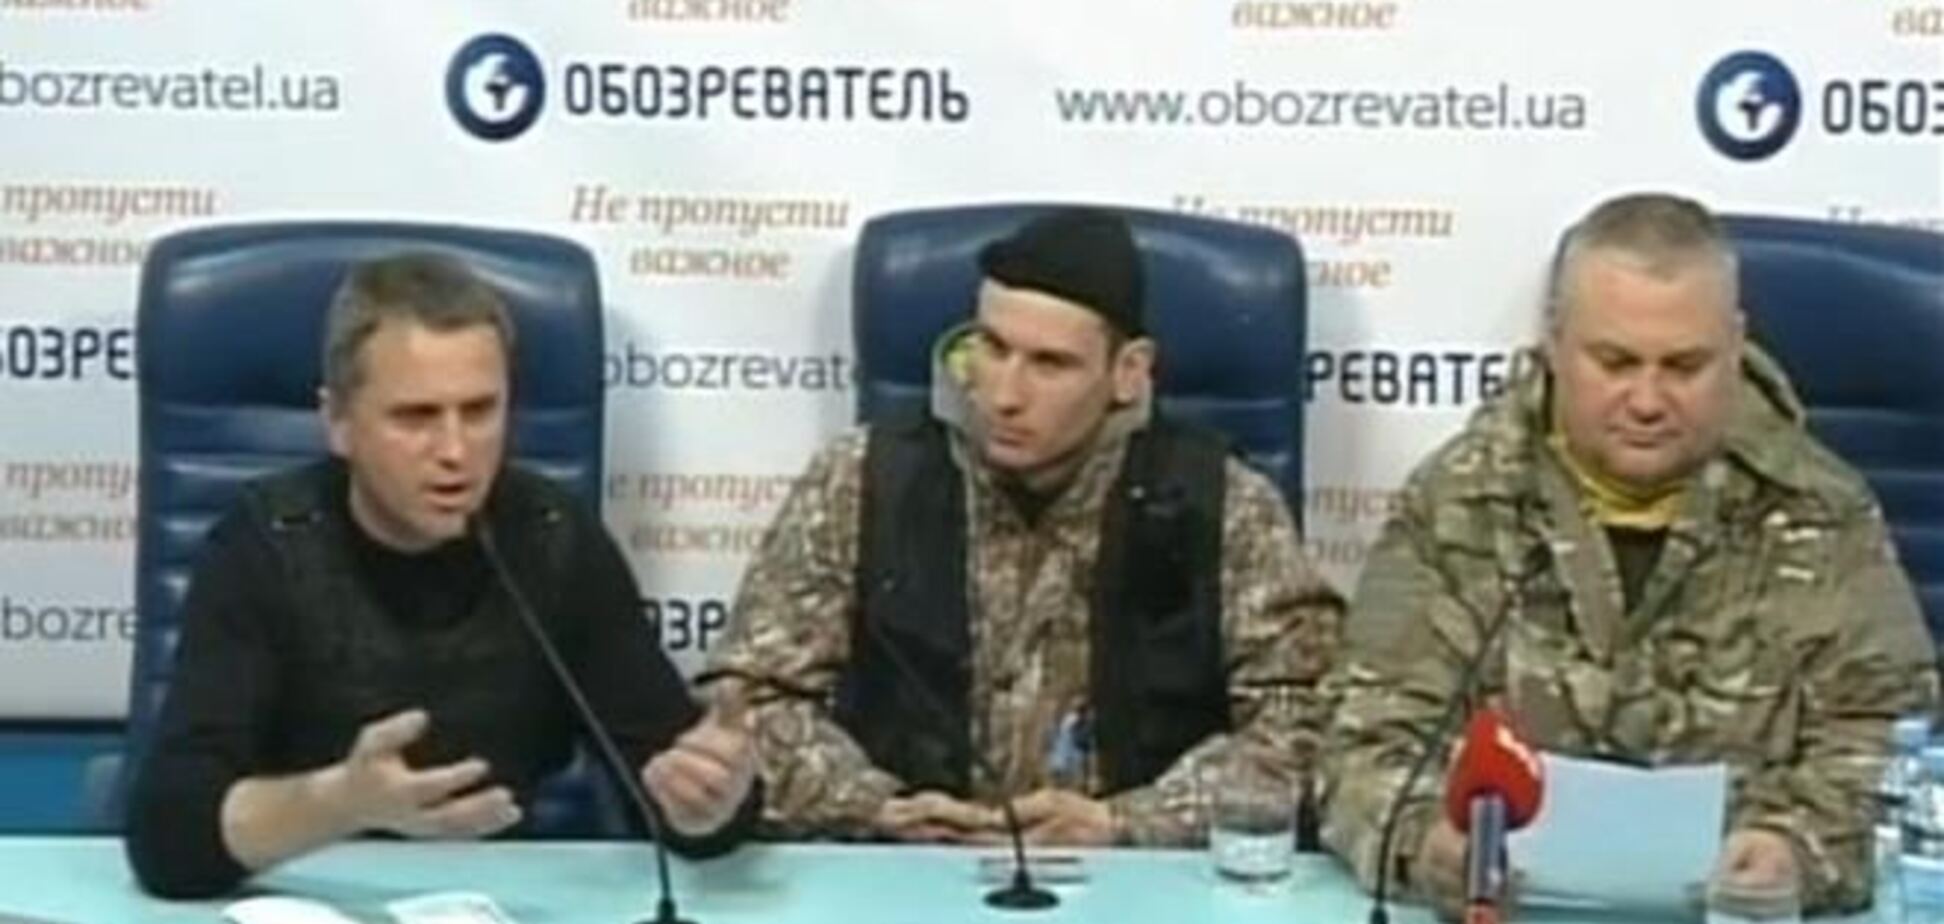 Координаційна рада Майдану посварився з Самообороною Майдану в прямому ефірі ОБОЗа